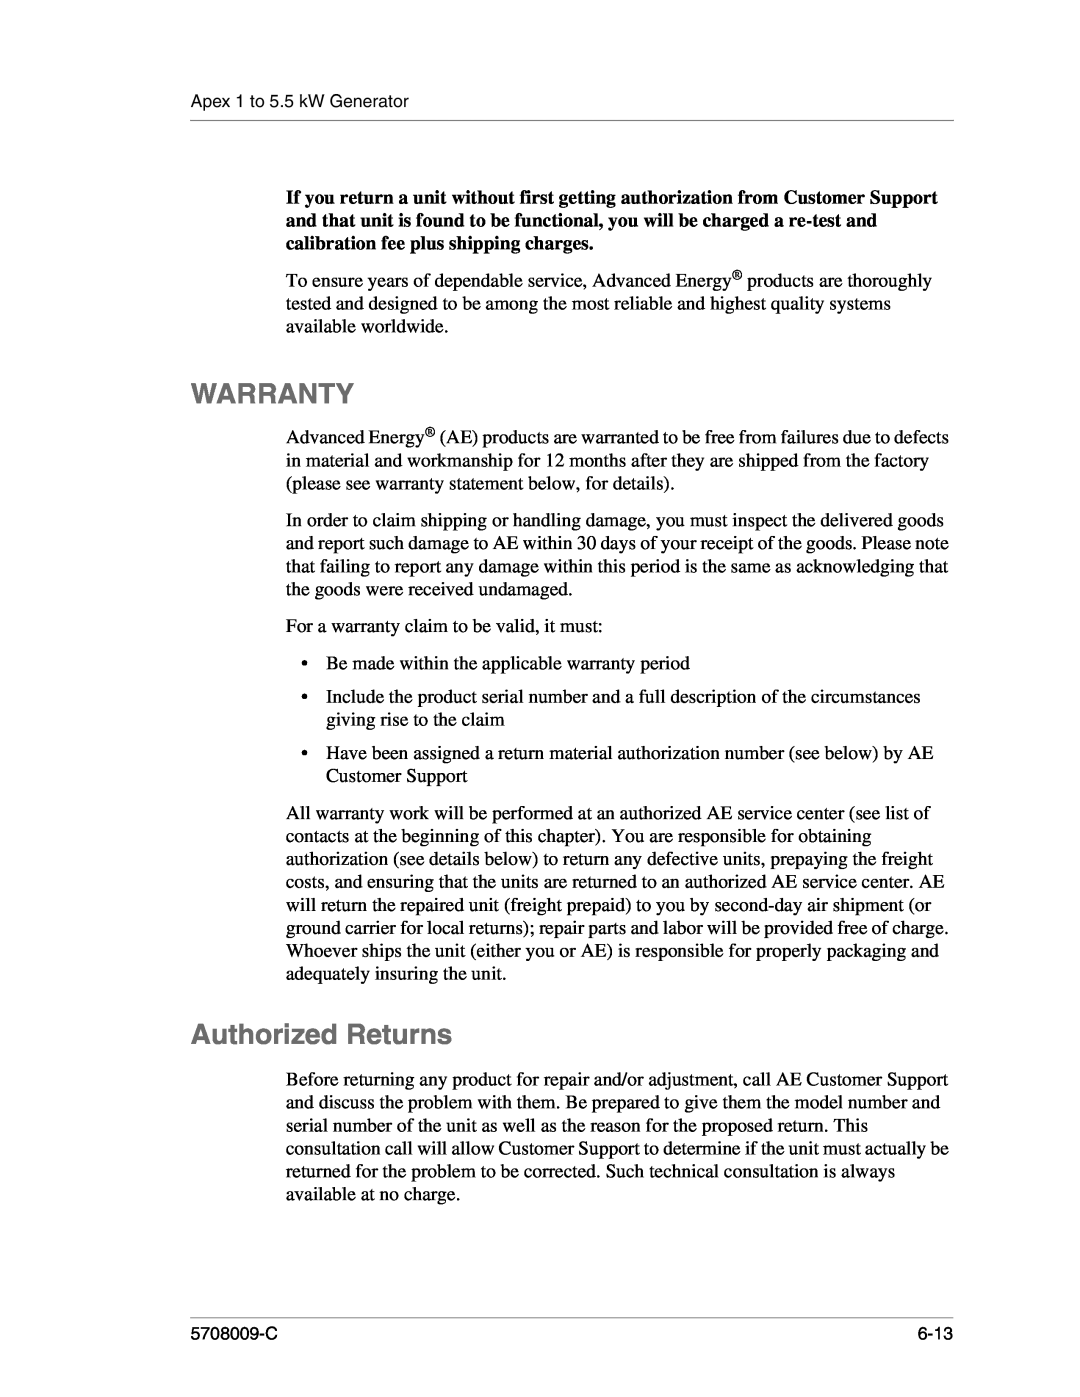 Apex Digital 5708009-C manual Warranty, Authorized Returns 